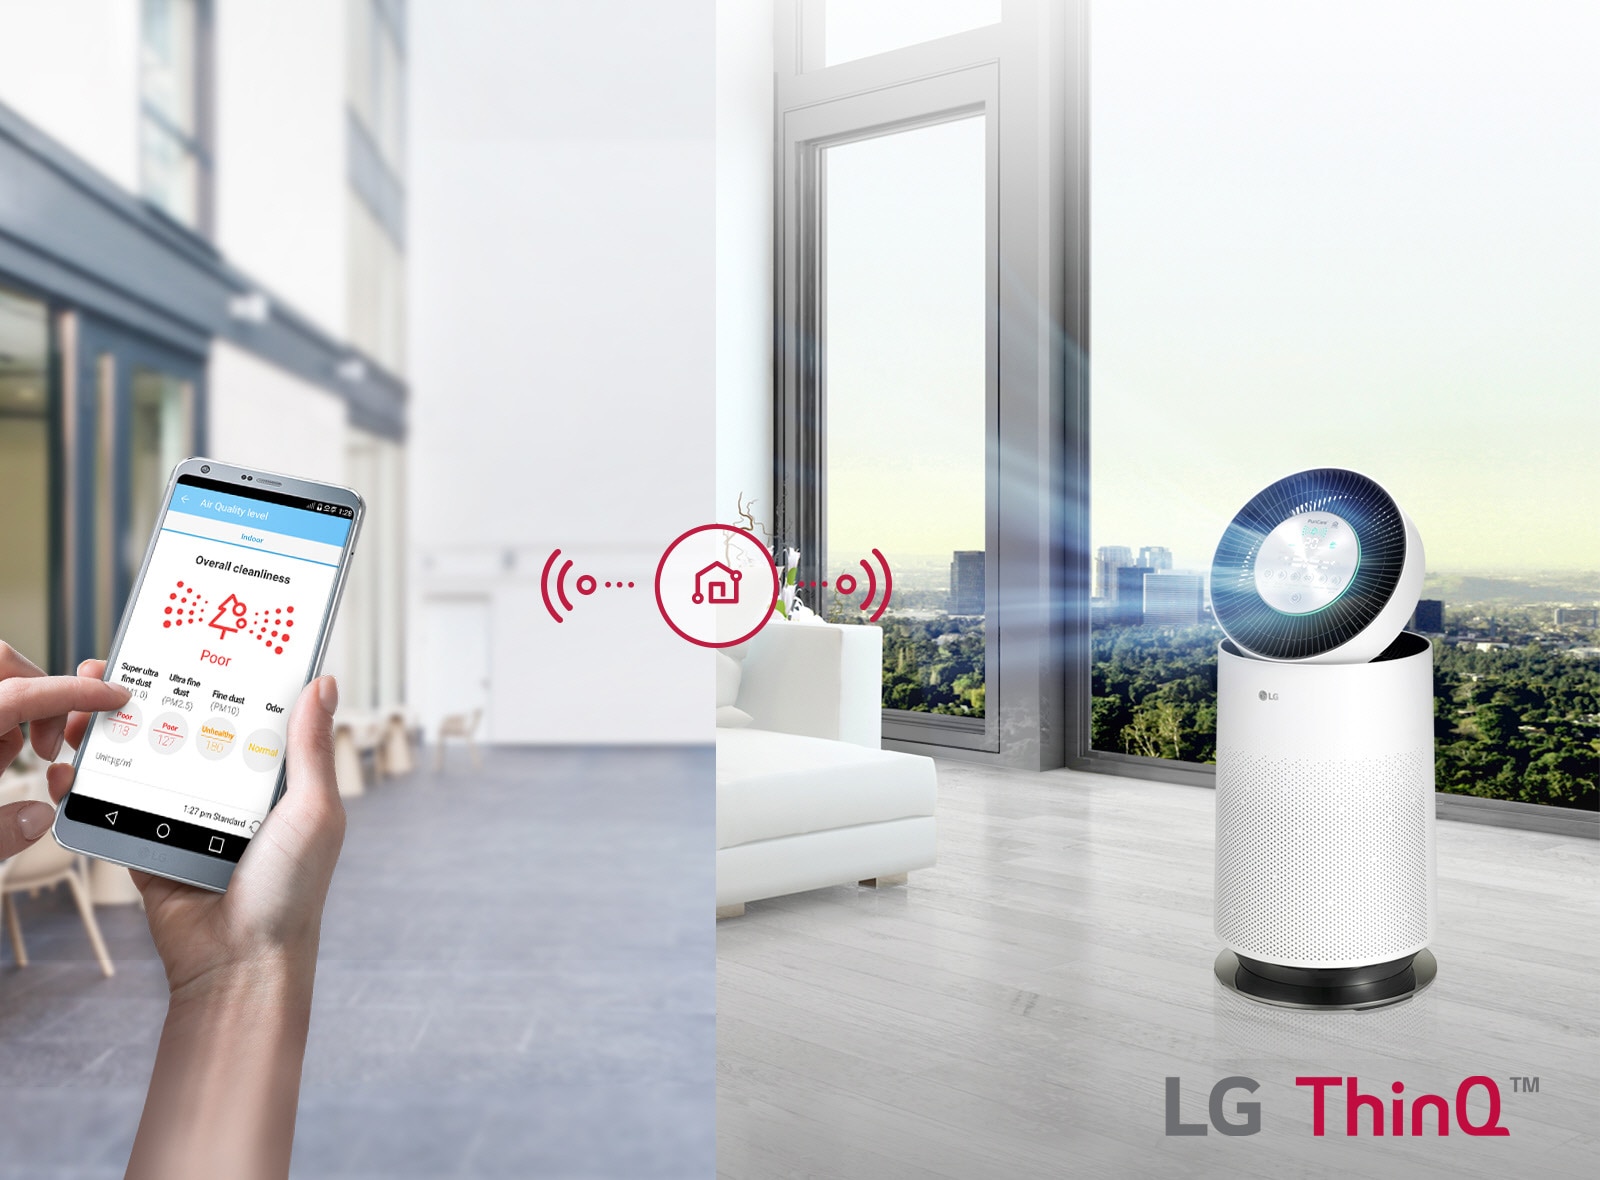 LG Intelligent LED Indicator System
                        